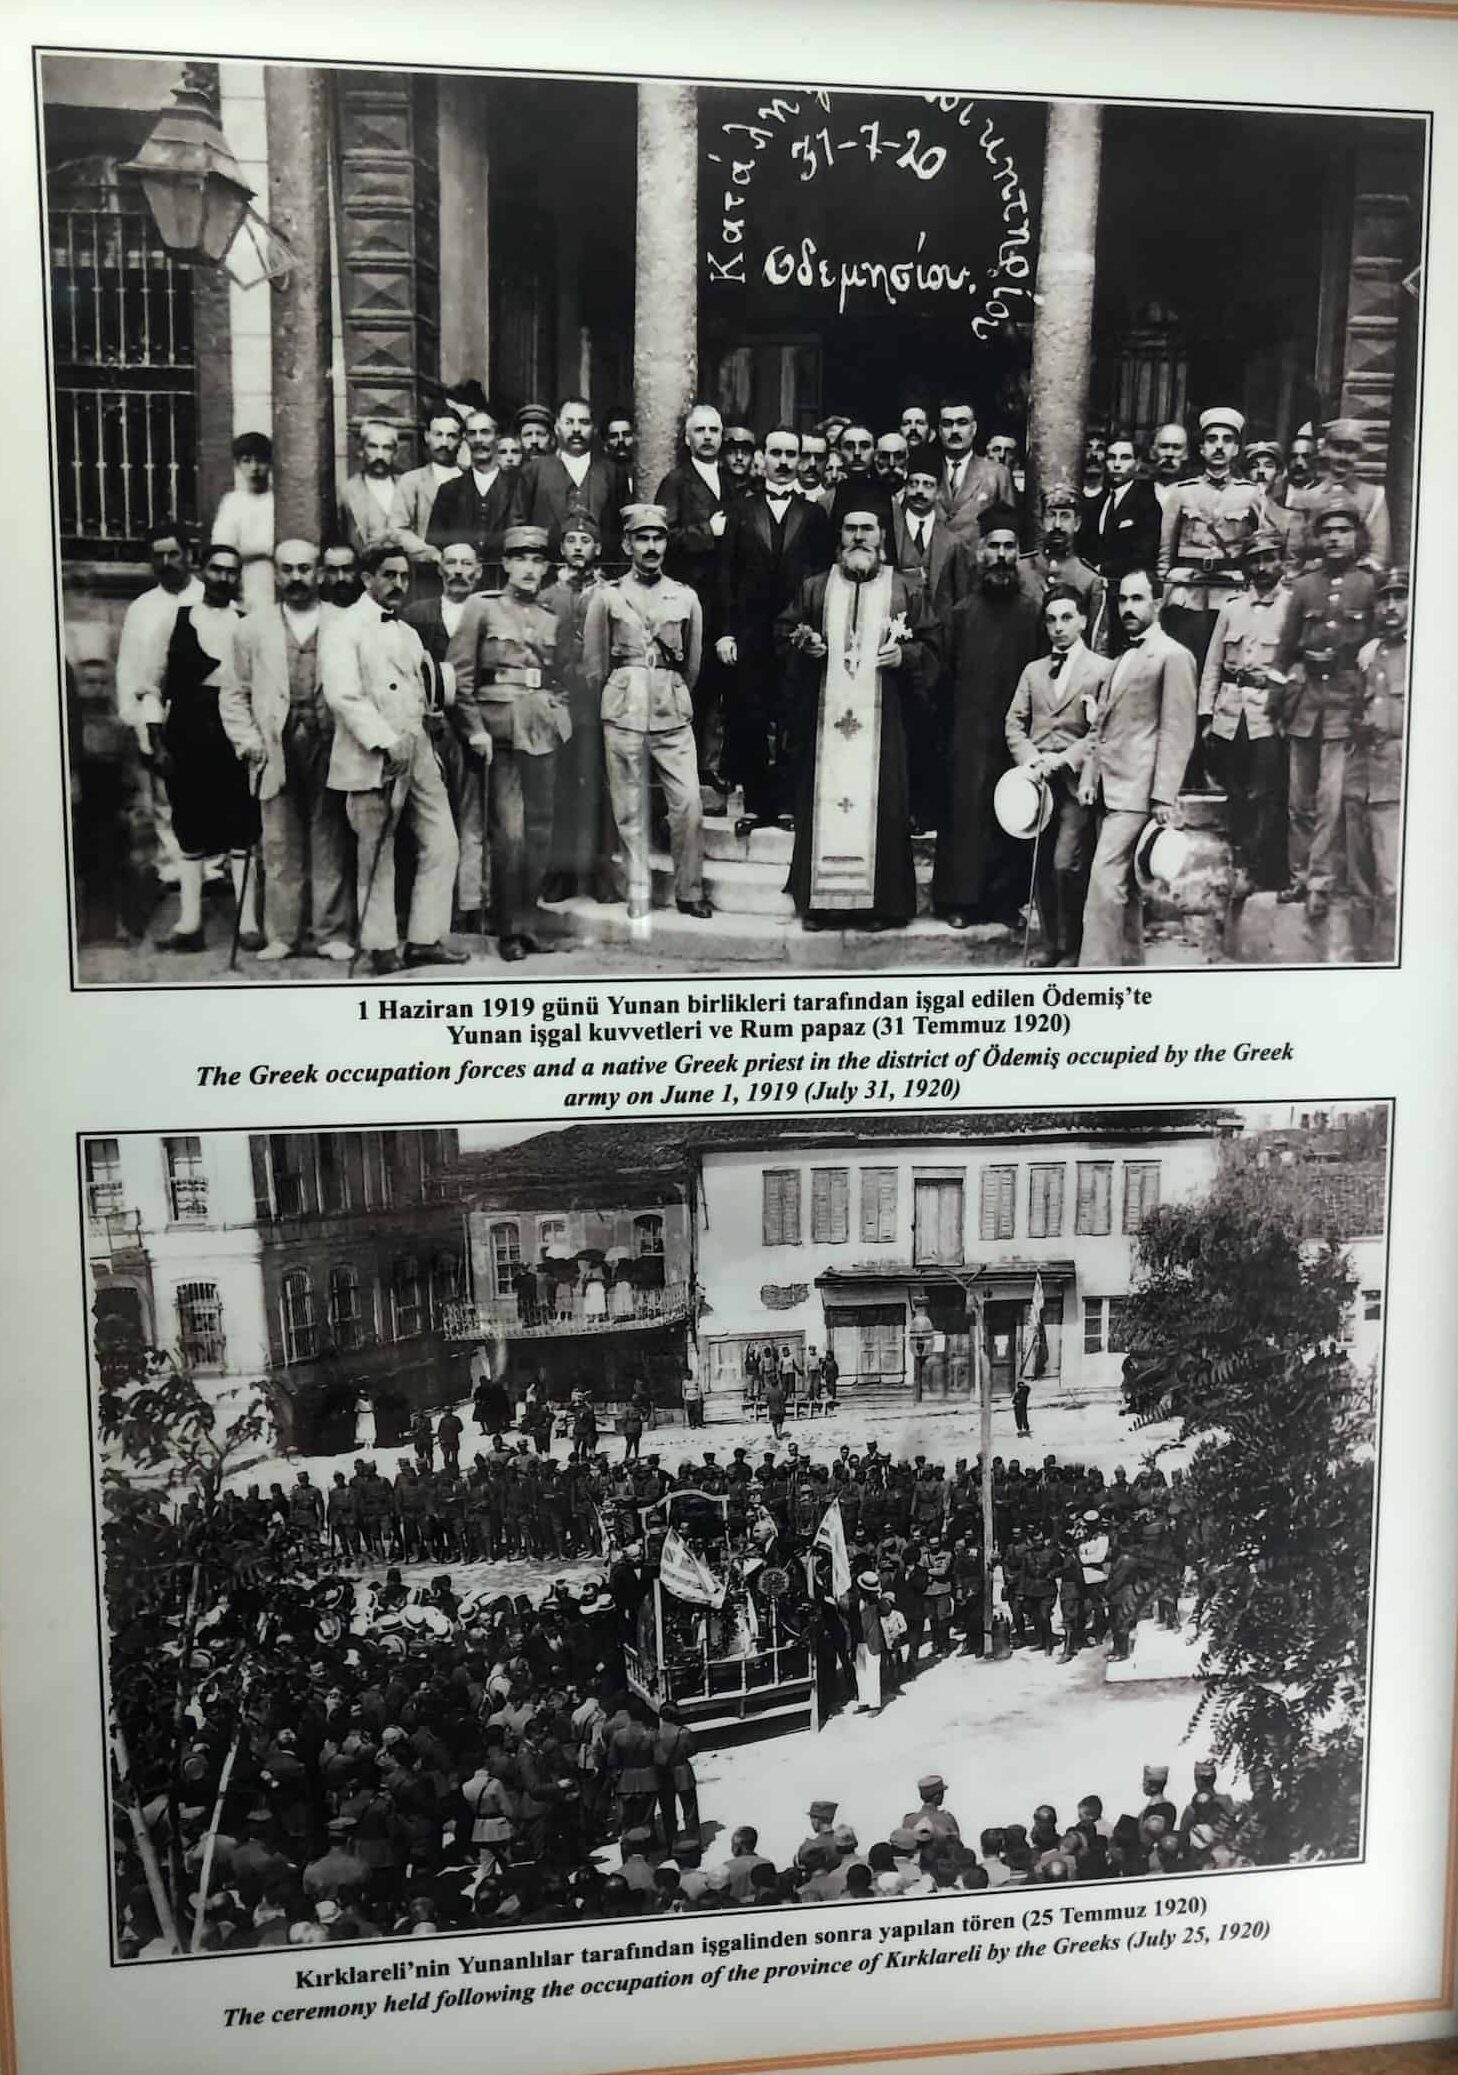 Photos of Greek ceremonies at Kırklareli (bottom) and Ödemiş (top) at the Atatürk and War of Independence Museum